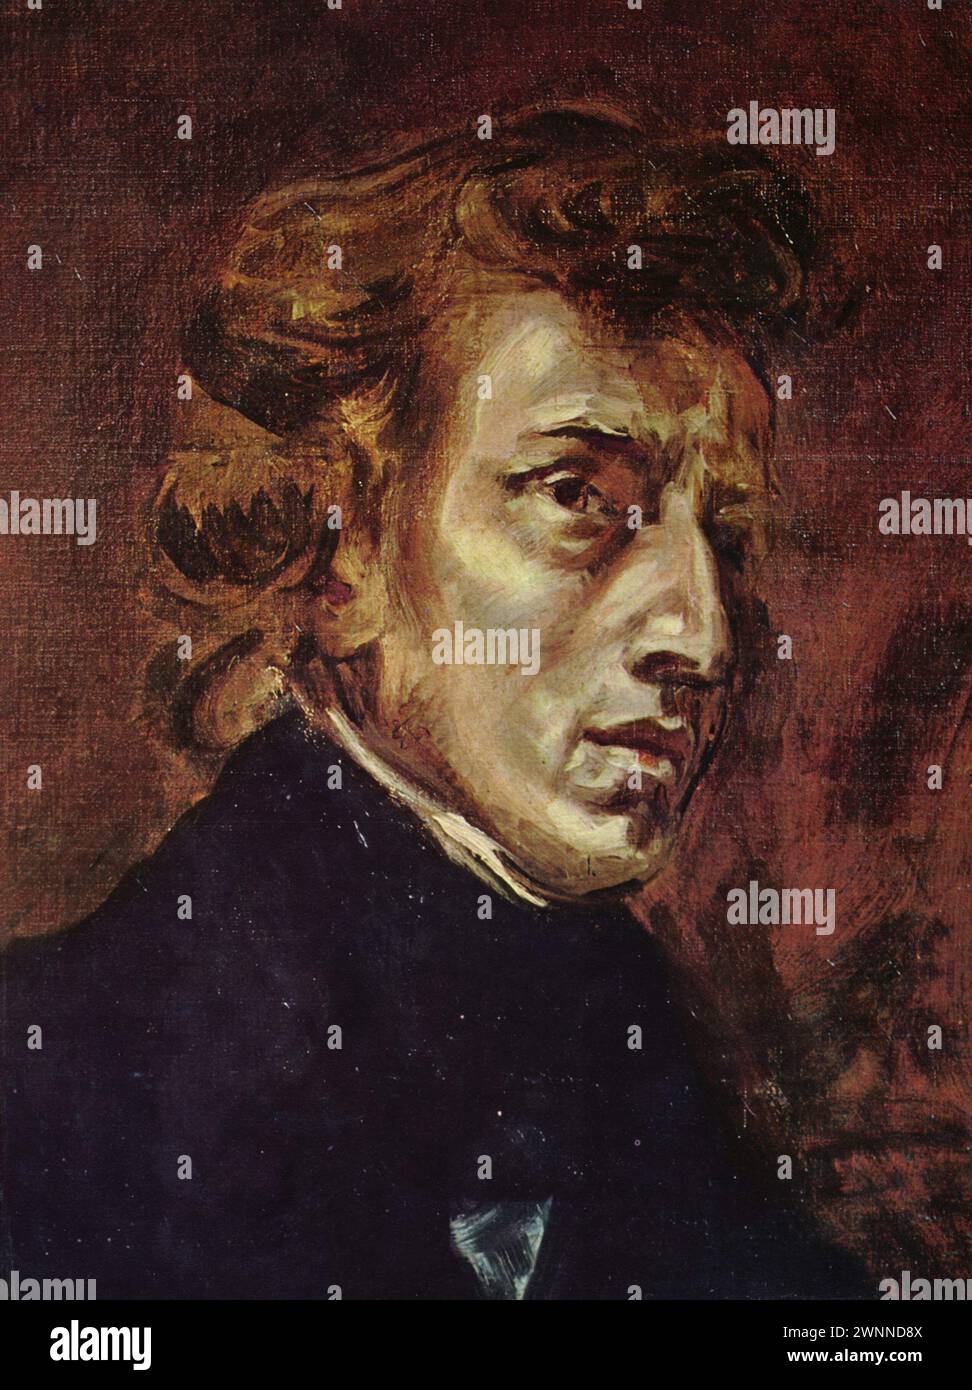 Le Portrait de Frédéric Chopin et George Sand est une peinture à l'huile sur toile inachevée de 1838 de l'artiste français Eugène Delacroix. Banque D'Images